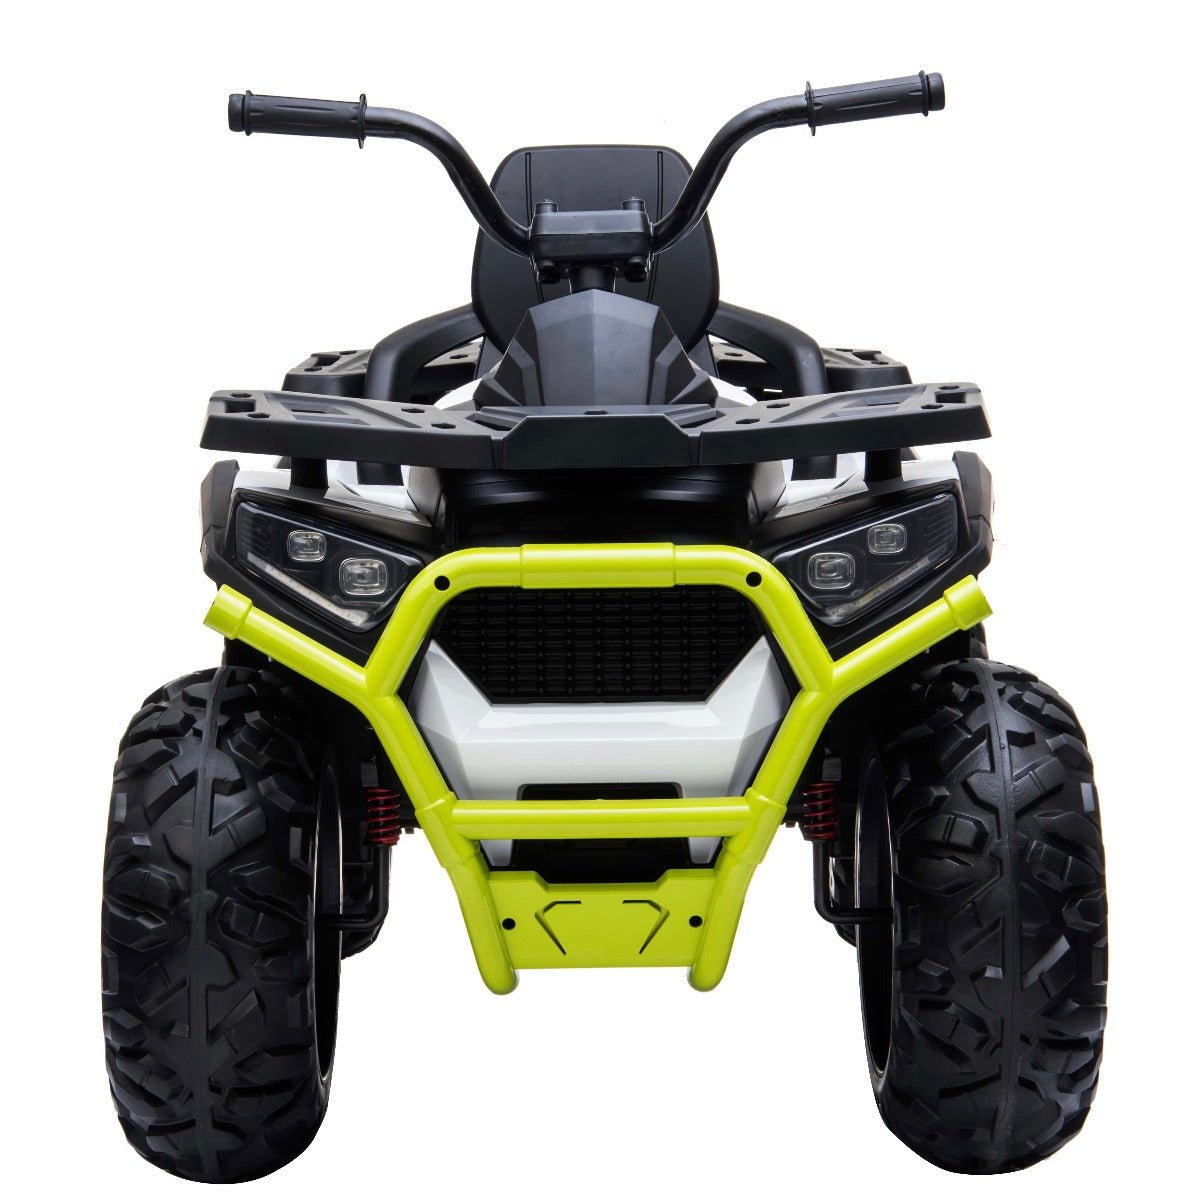 Desert D9 12v Children’s Electric Ride On ATV Quad Bike